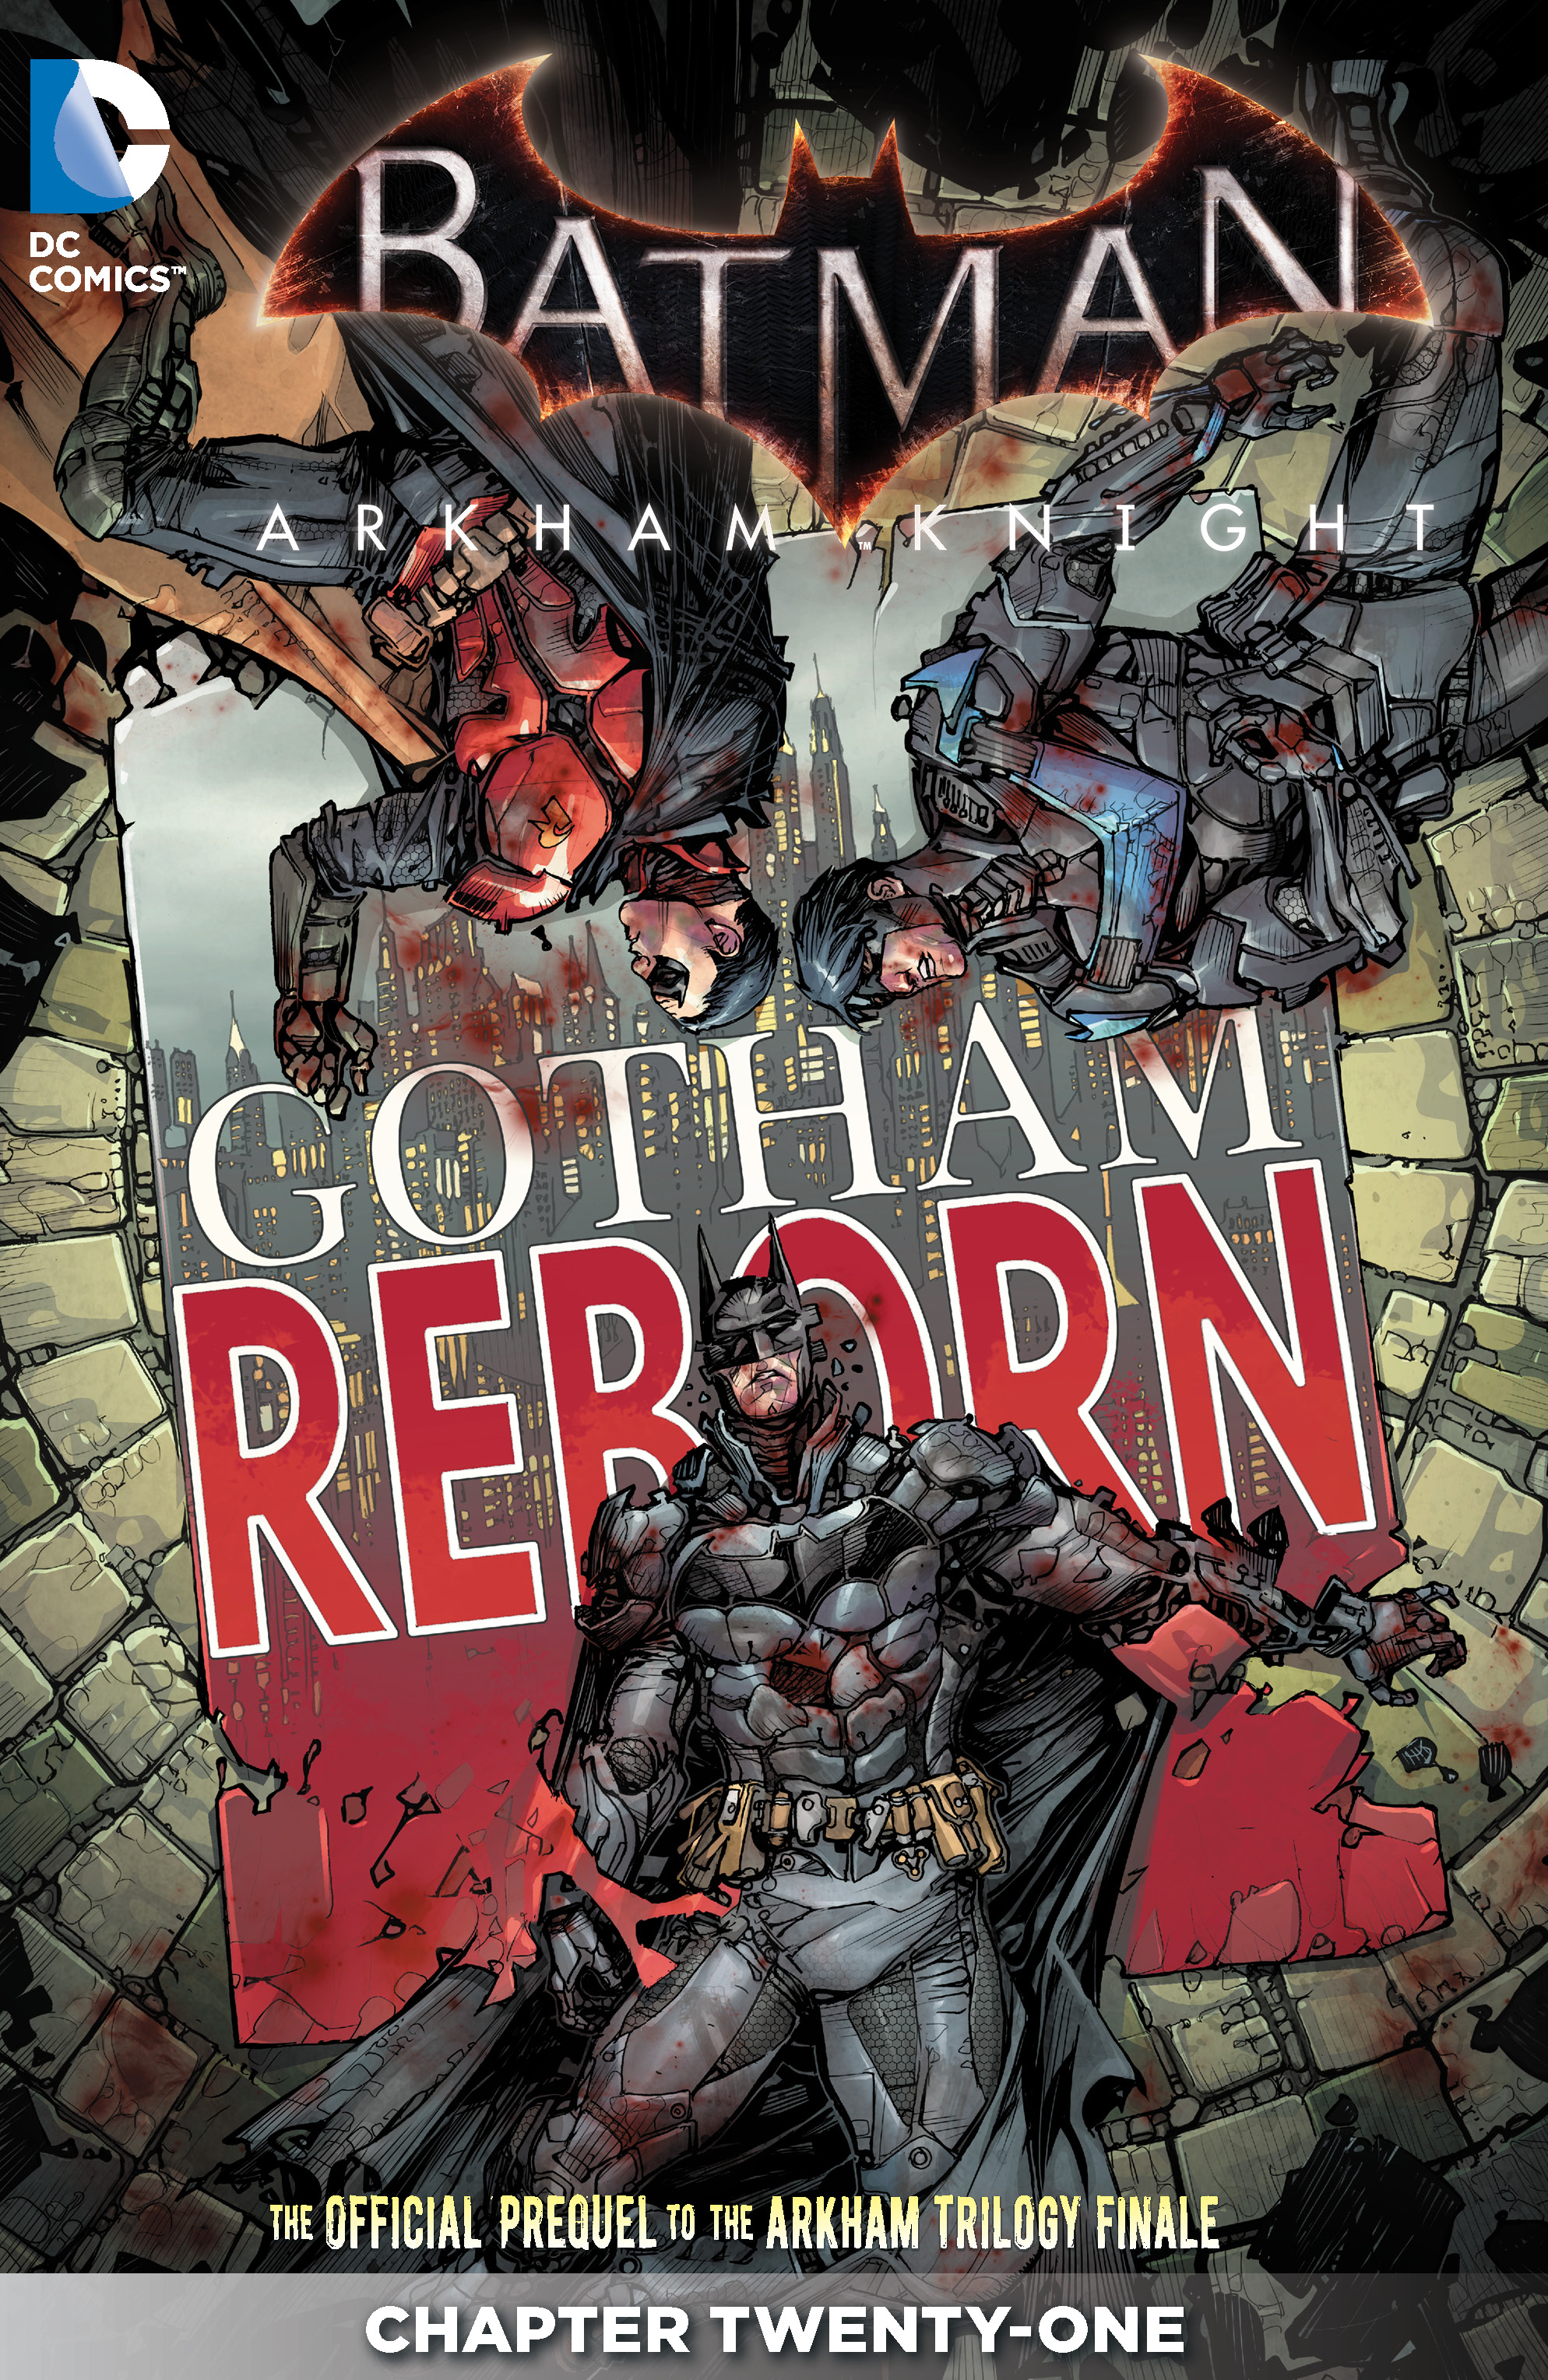 Batman: Arkham Knight #21 preview images